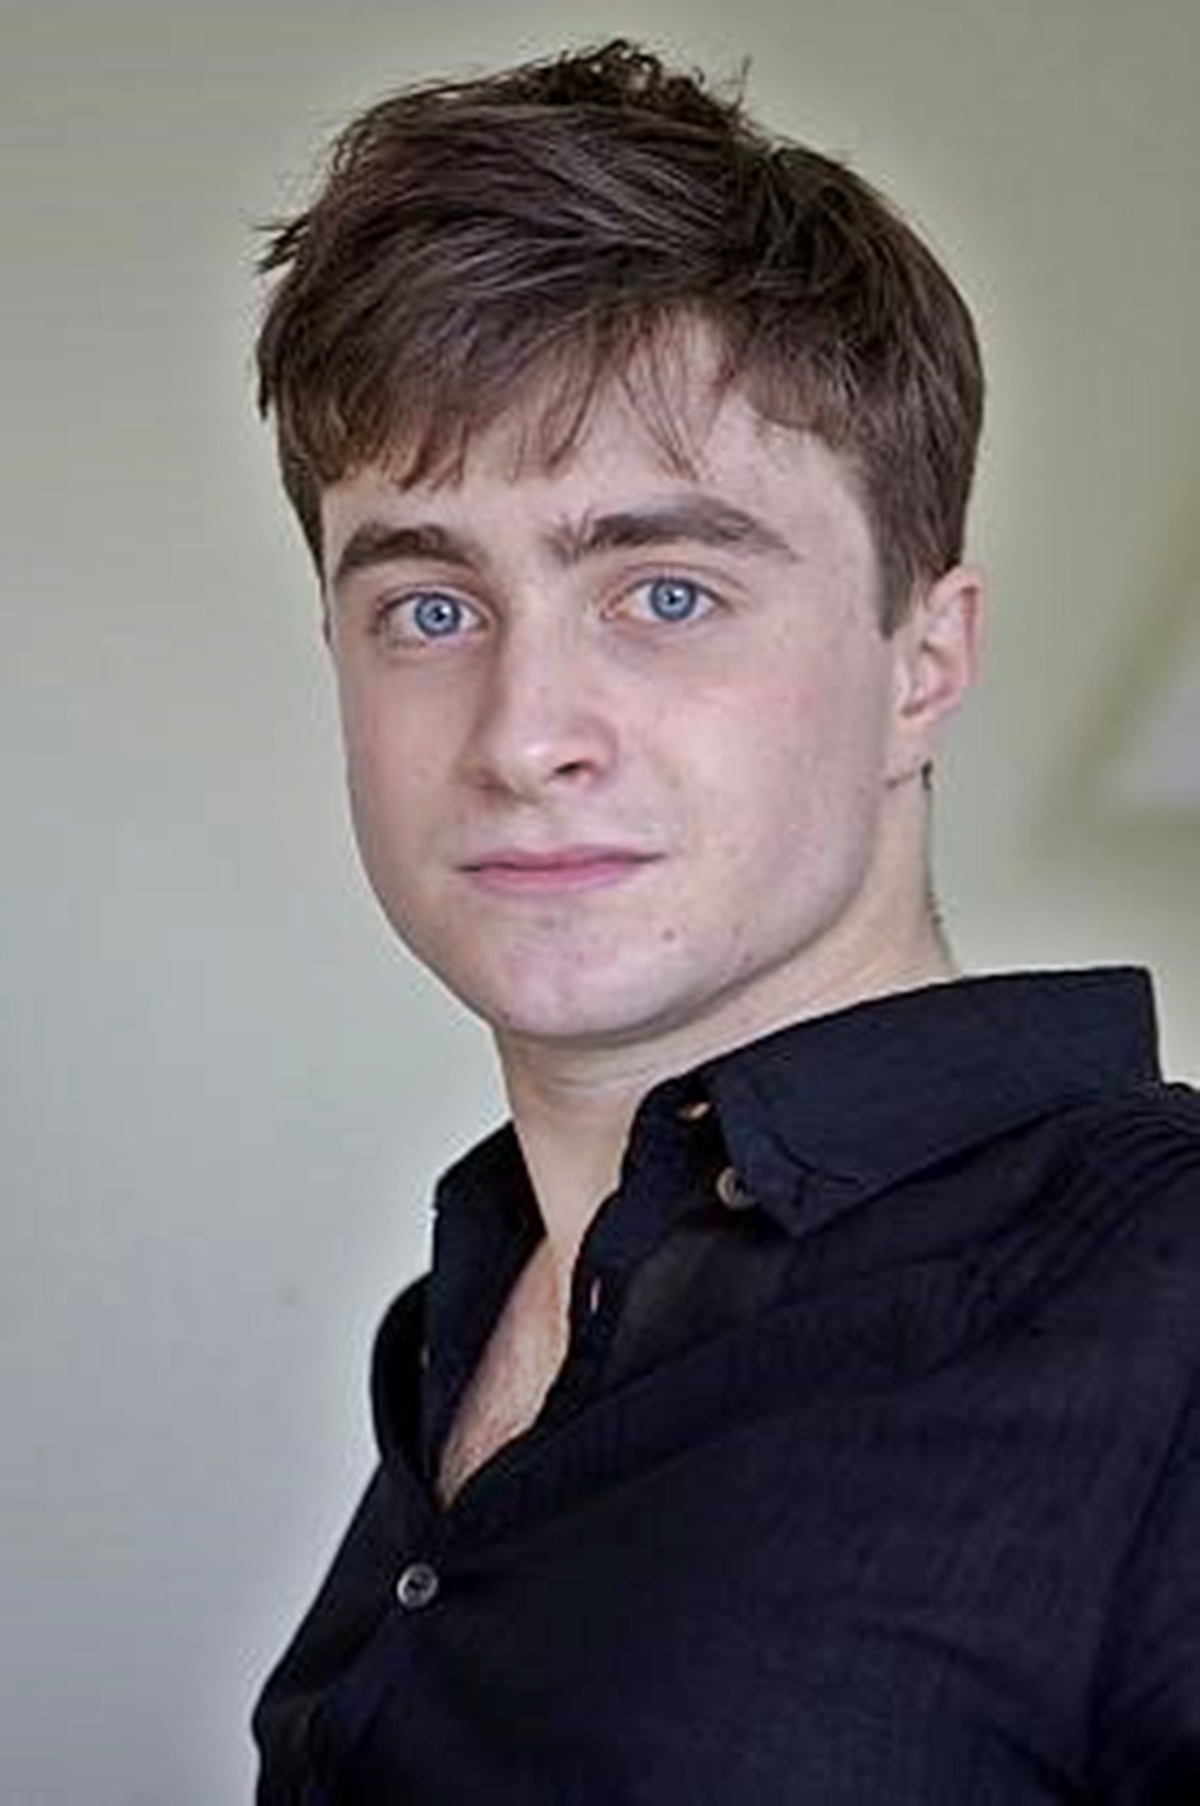 Szomorú hírt osztott meg Daniel Radcliffe, aki betegségéről mesélt